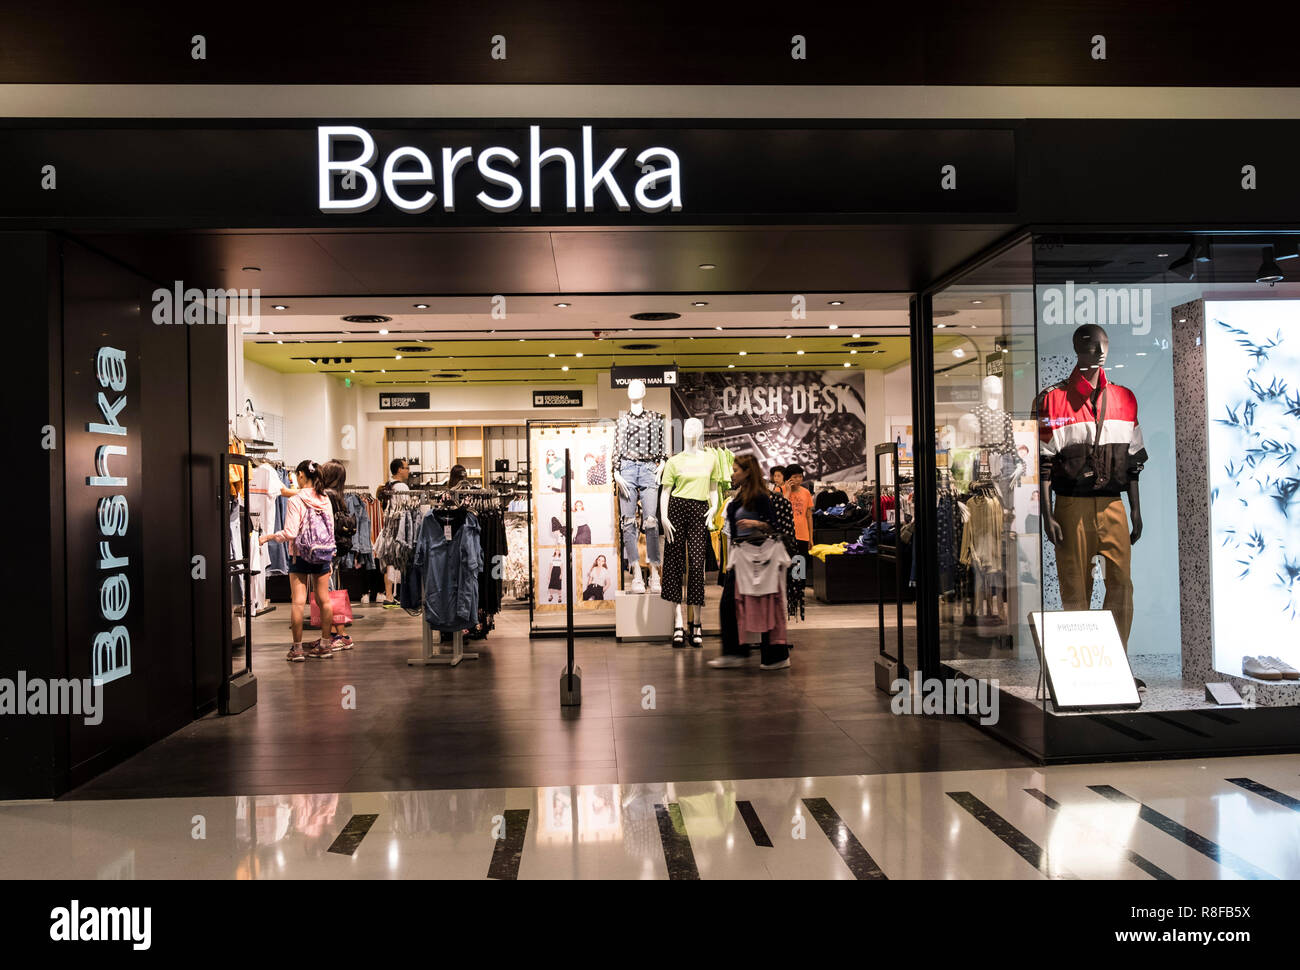 Bershka store immagini e fotografie stock ad alta risoluzione - Alamy